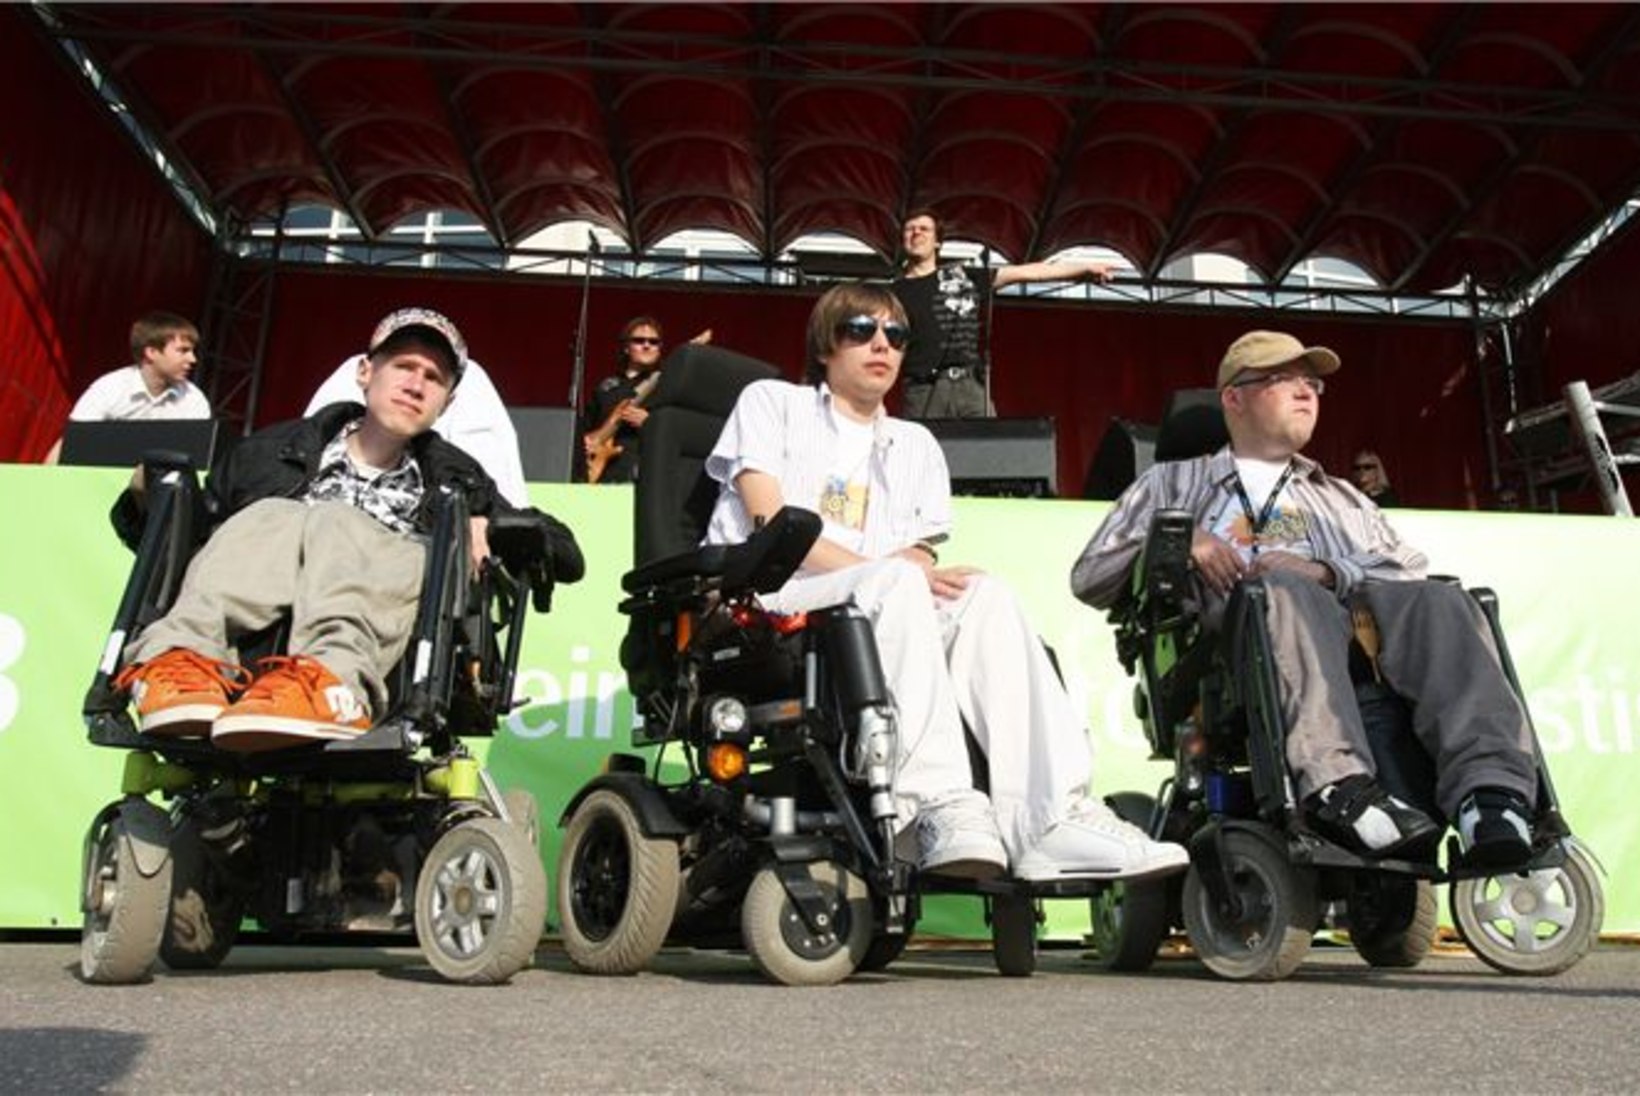 PILTUUDIS: Lauluväljakul toimus ratastoolis inimeste pidu